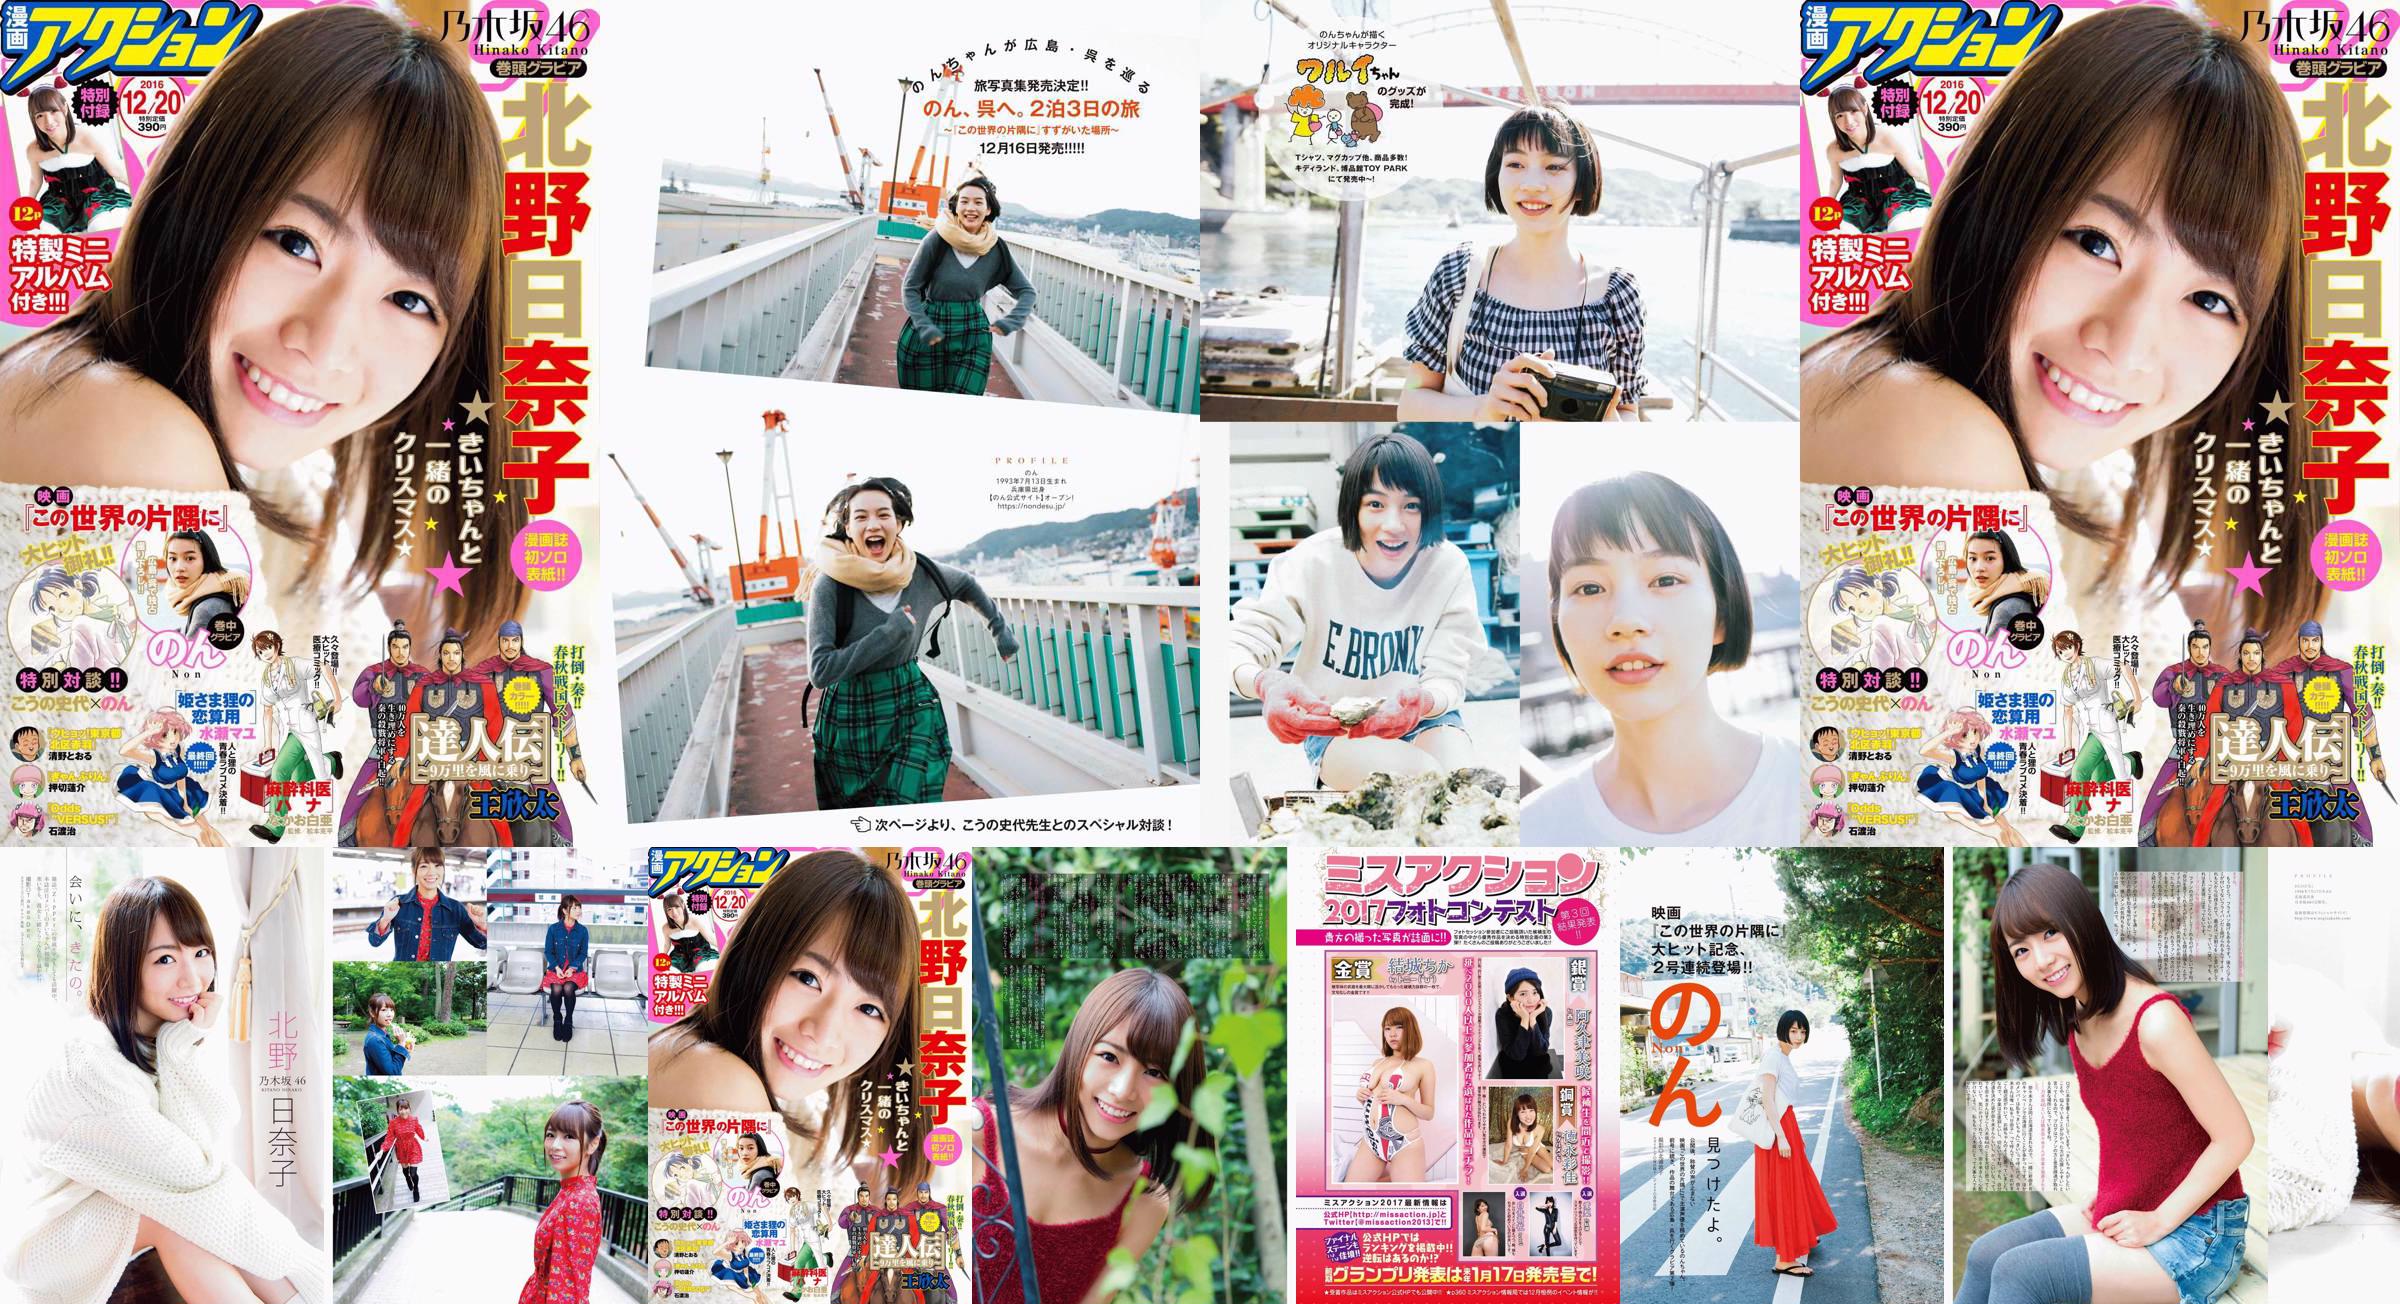 [Manga Action] Kitano Hinako のん 2016 No.24 Photo Magazine No.114802 Page 1